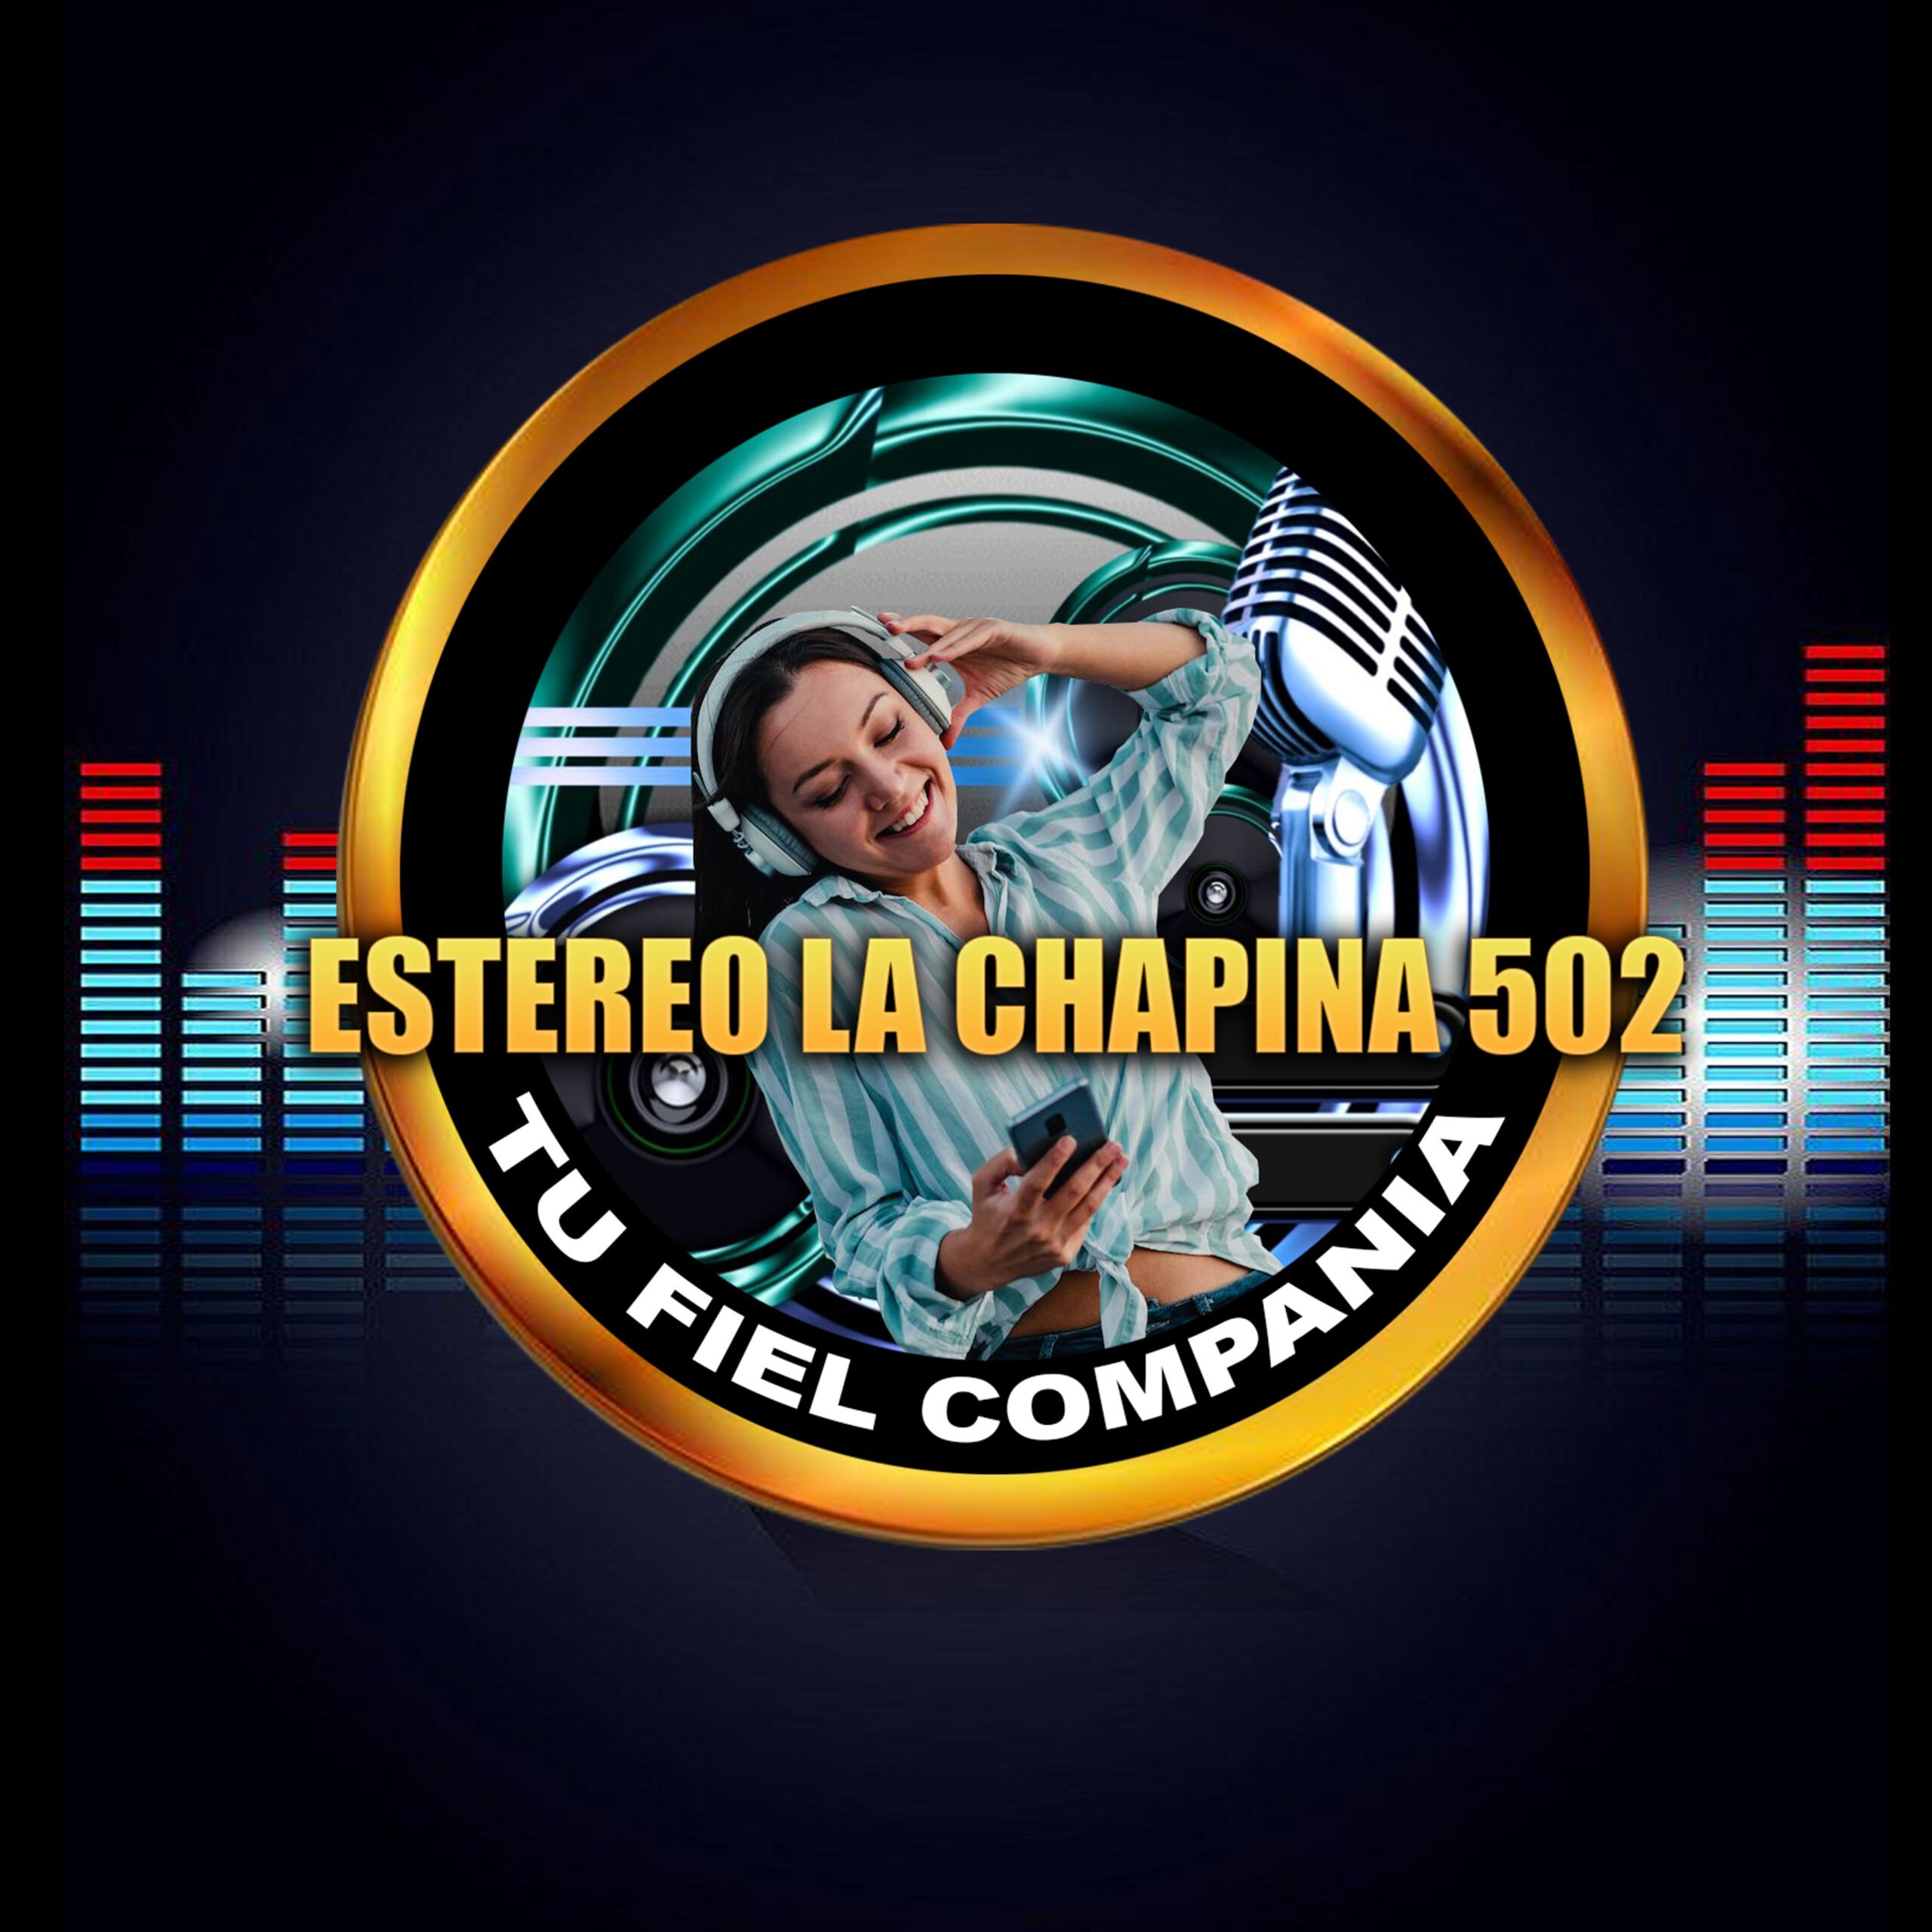 Estereo La Chapina 502